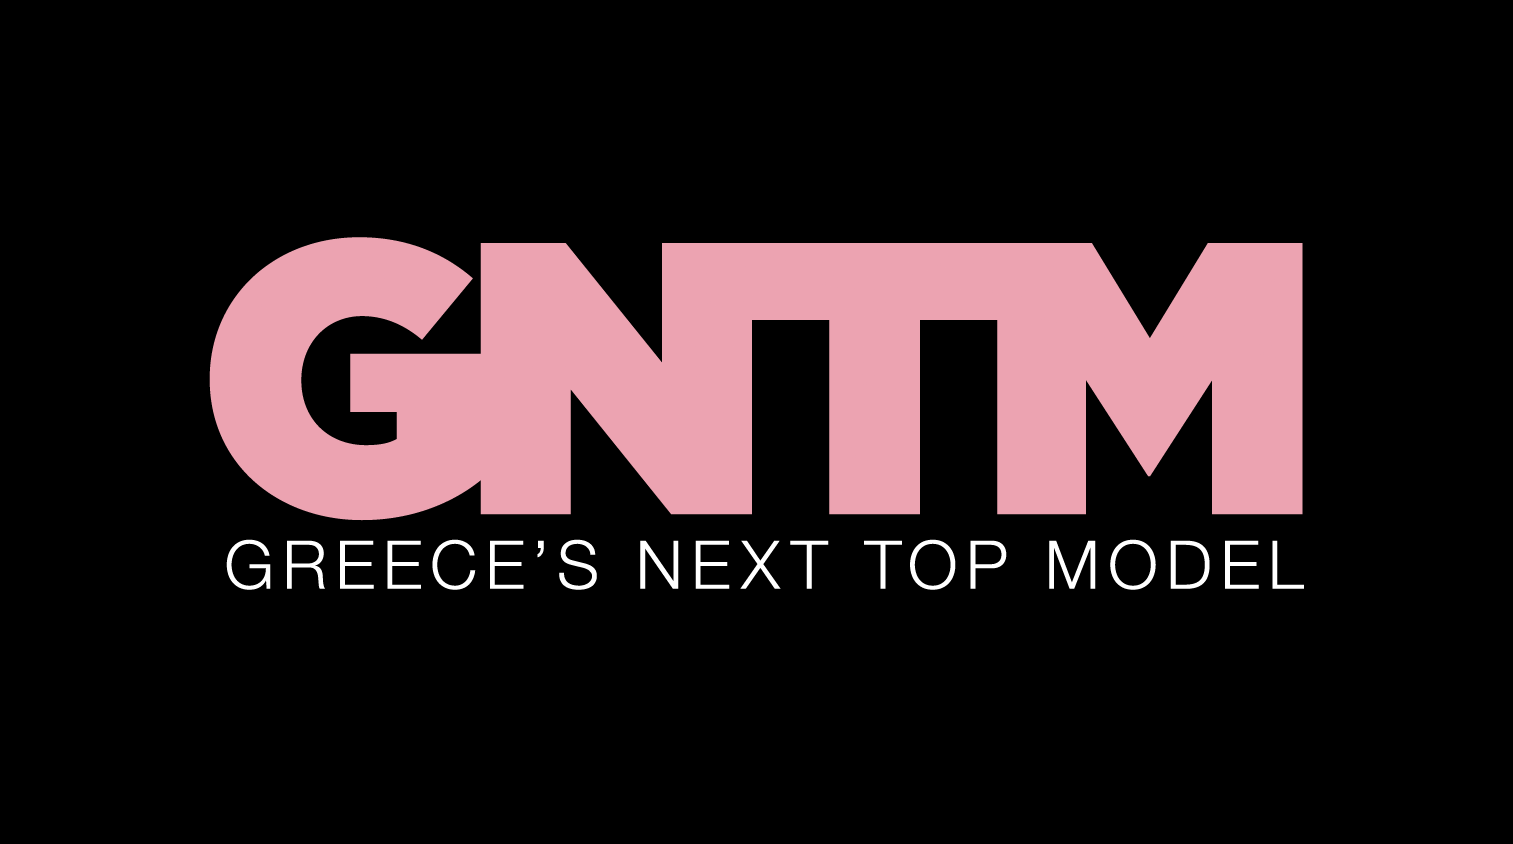 GNTM: Τεράστια ανατροπή την επόμενη σεζόν - Τι αλλάζει;